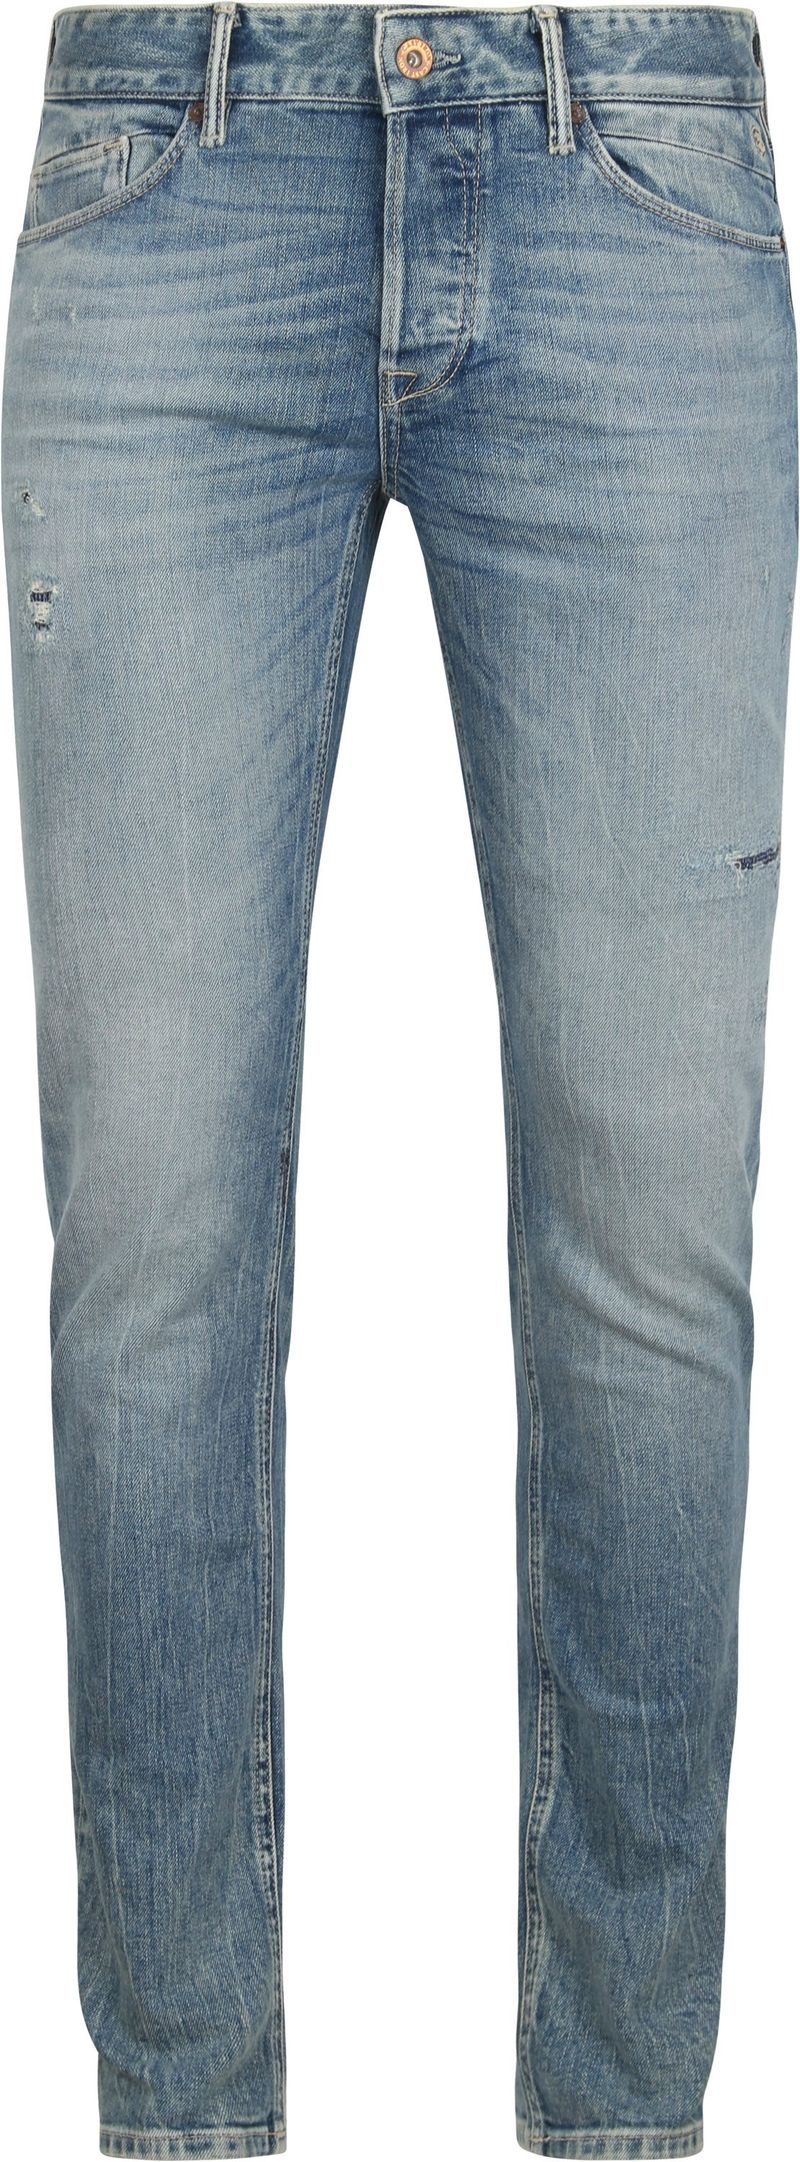 Cast Iron Riser Jeans Slim Soft Blau - Größe W 34 - L 34 von Cast Iron